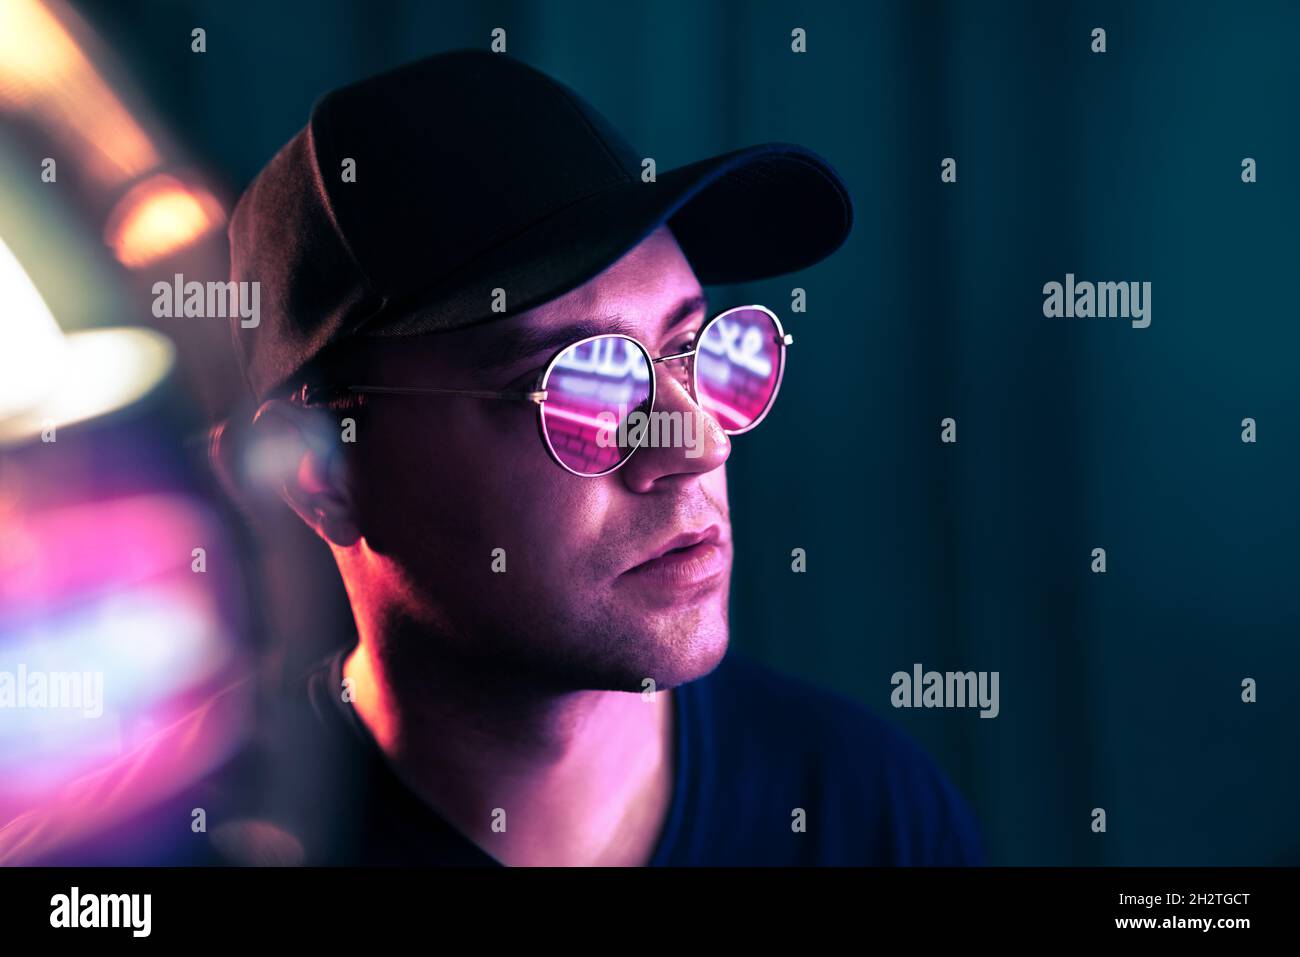 Technologie au néon futuriste.Homme avec des lunettes dans l'avenir cyber-punk illumination.Violet fluorescent sur la face.Portrait de studio.Fête techno rave. Banque D'Images